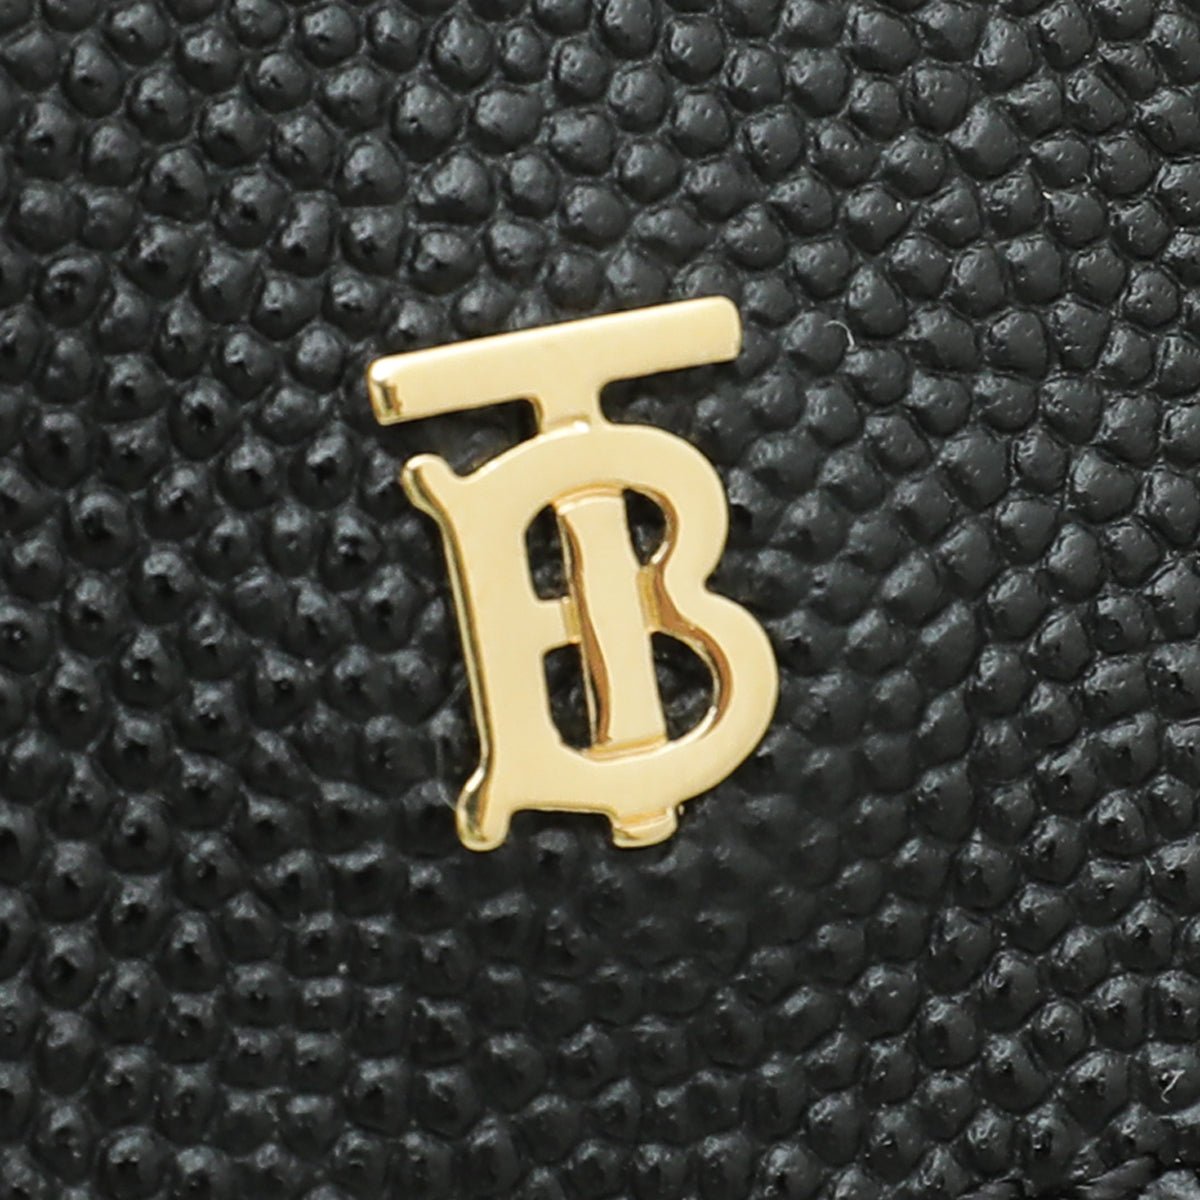 Burberry - Burberry Black TB Logo Airpod Case | The Closet